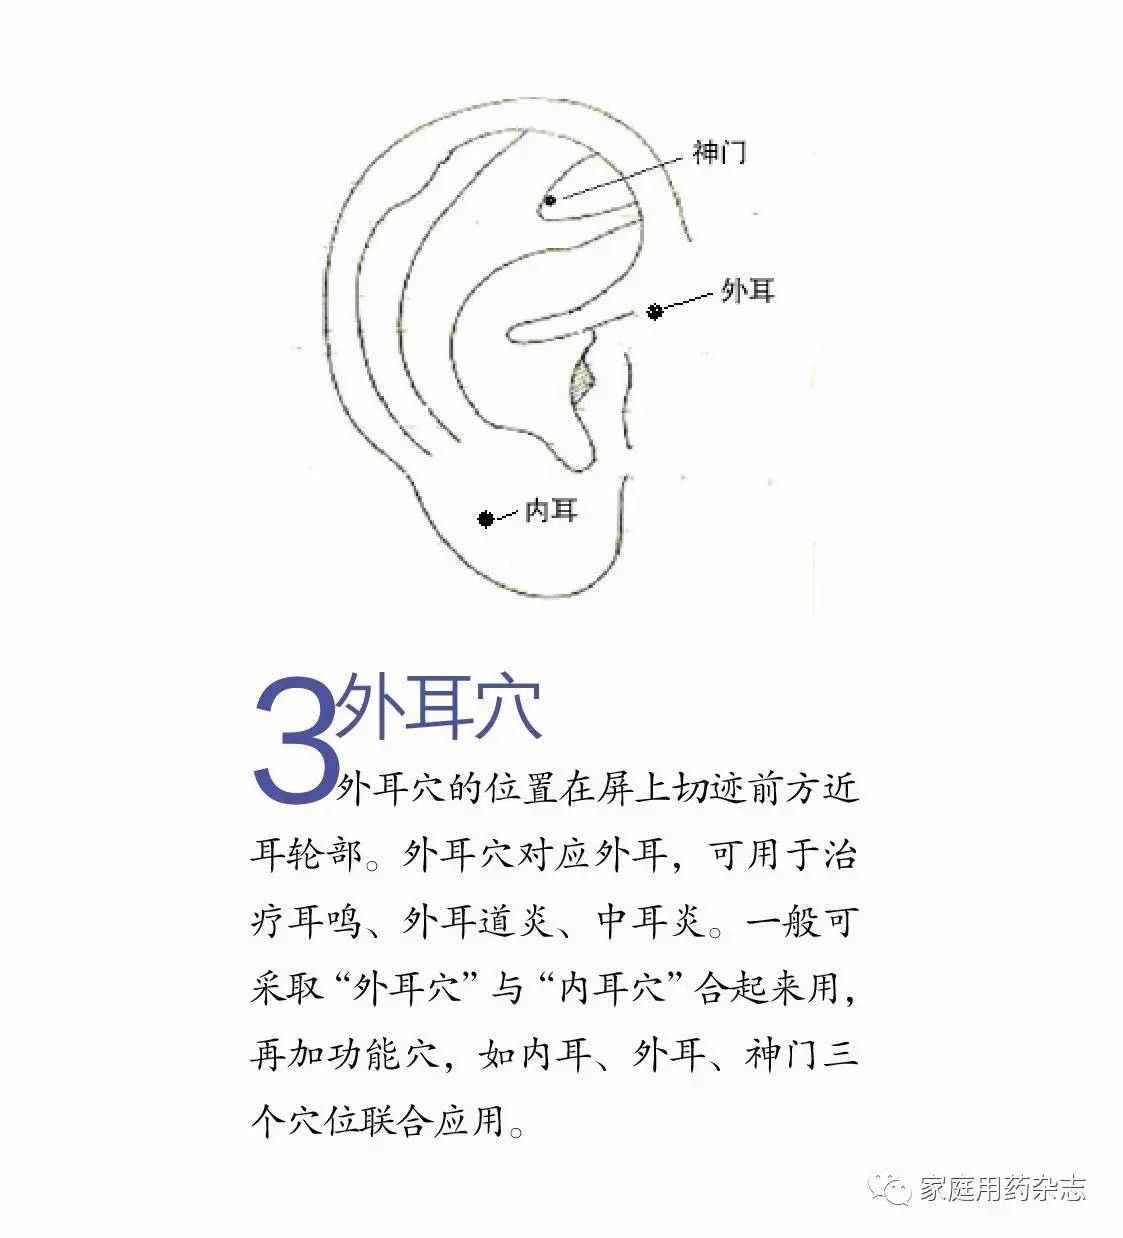 第四节 非标准化耳穴参考图-望耳诊病与耳穴治疗-医学